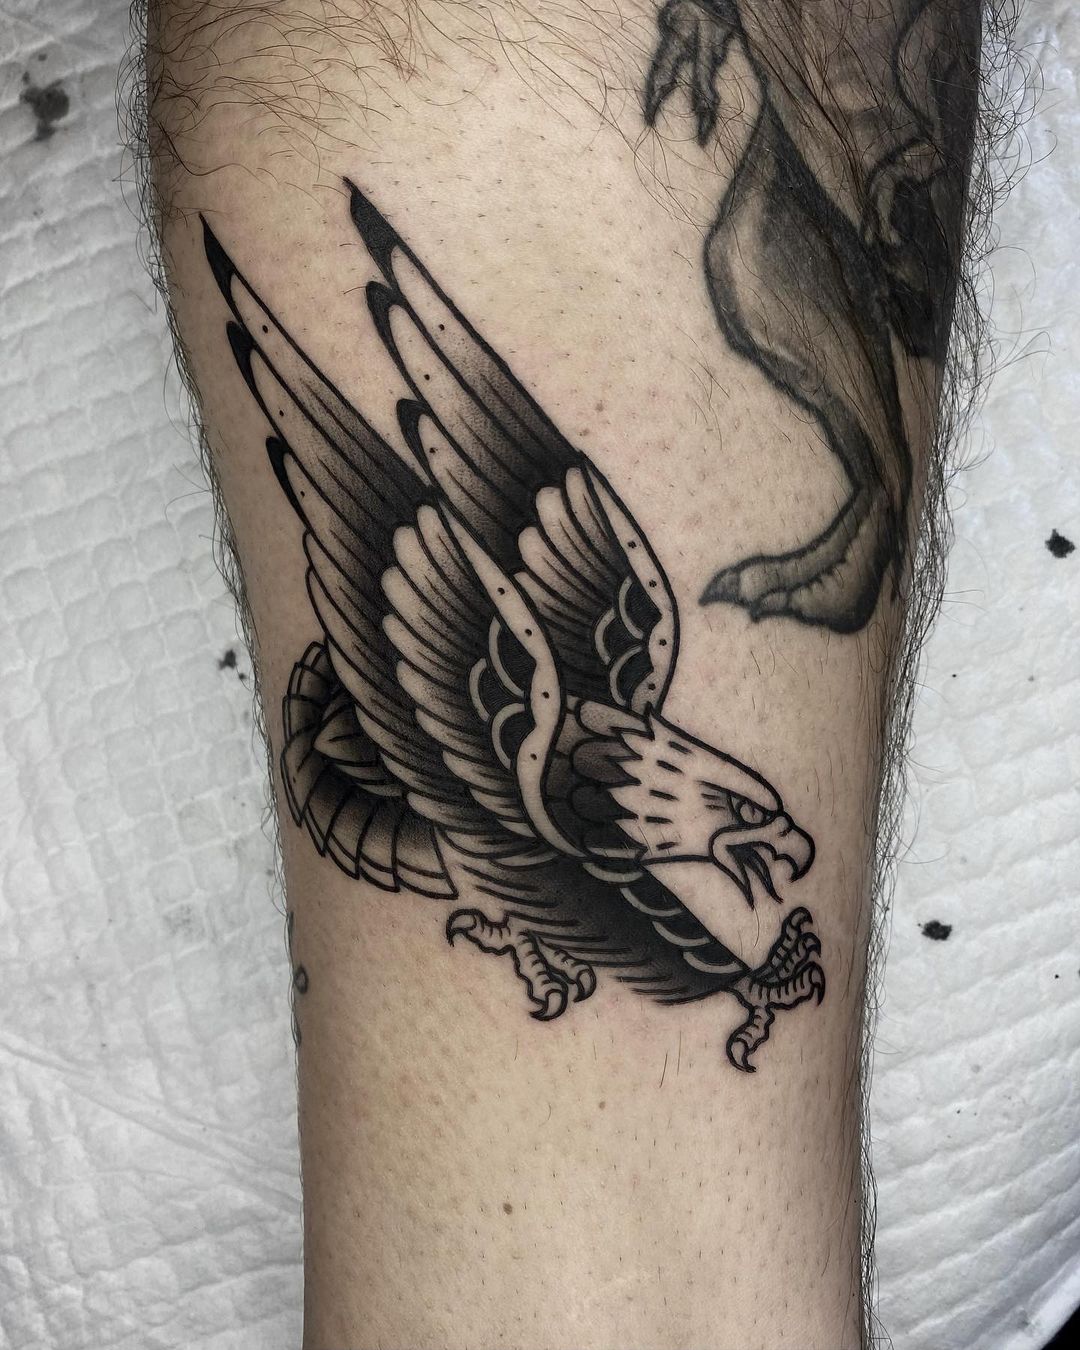 Black and white eagle tattoo bhy skipper 87 tattooing